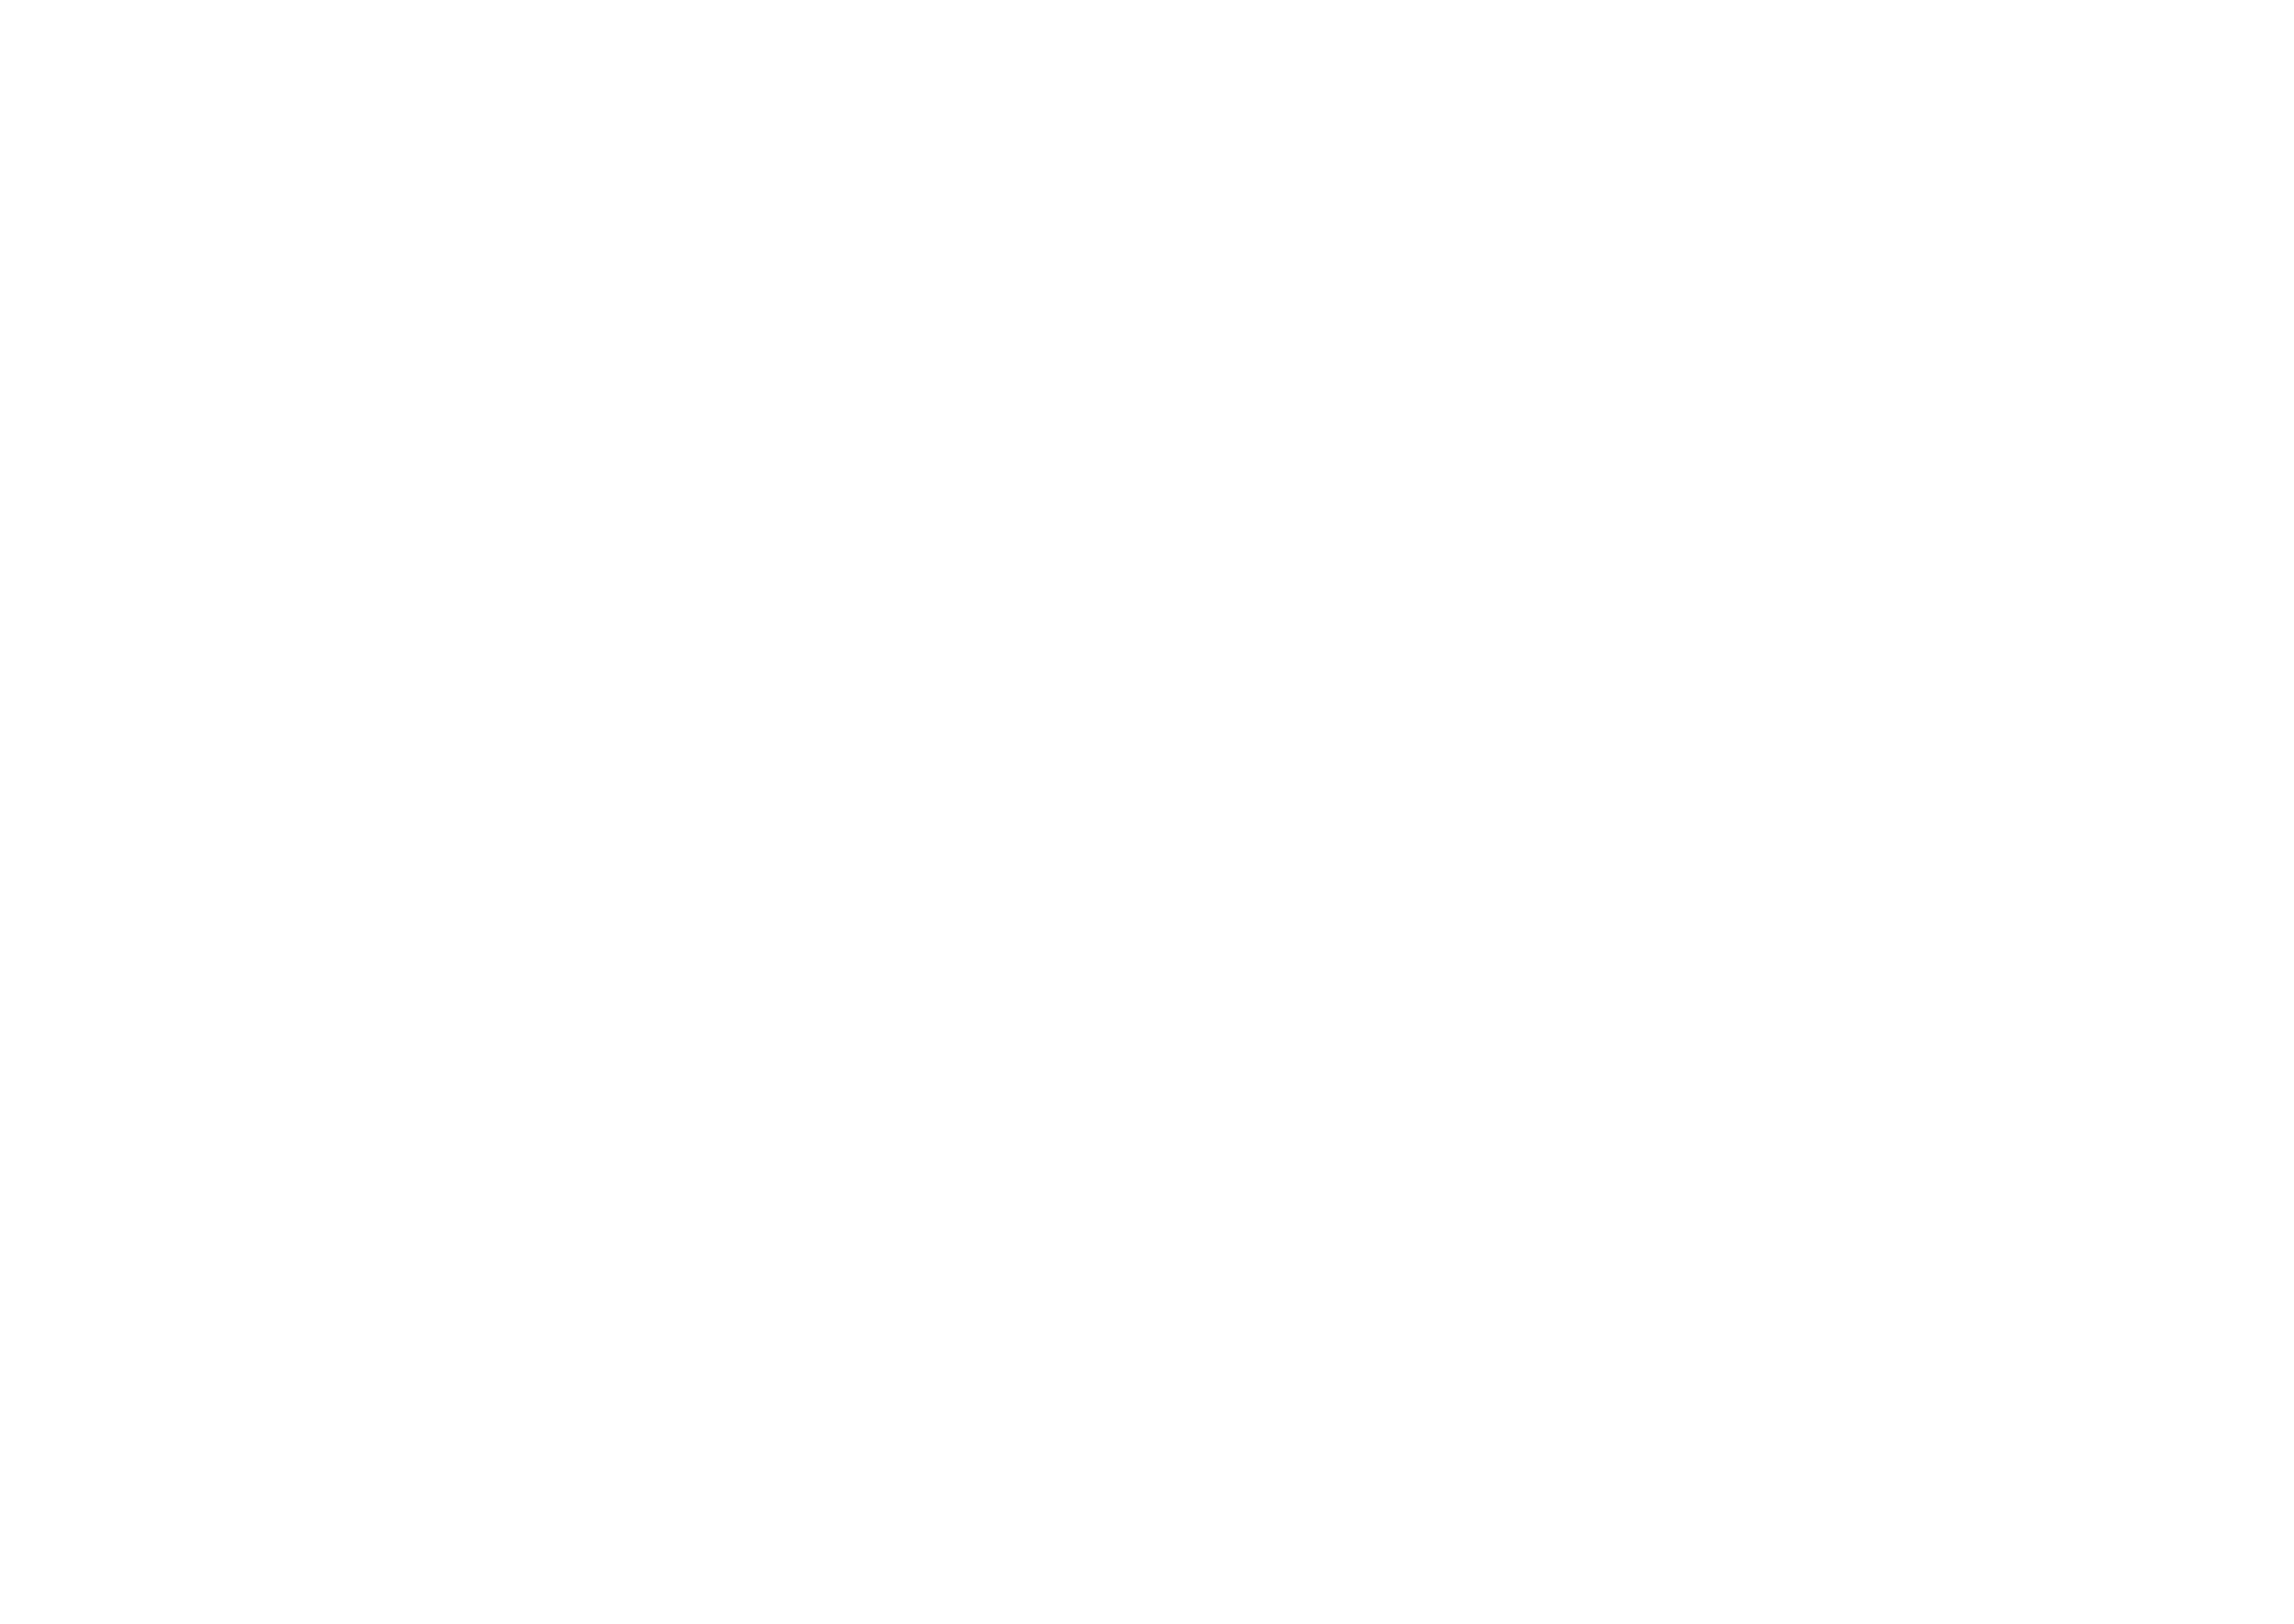 Rag and Bone Barbershop